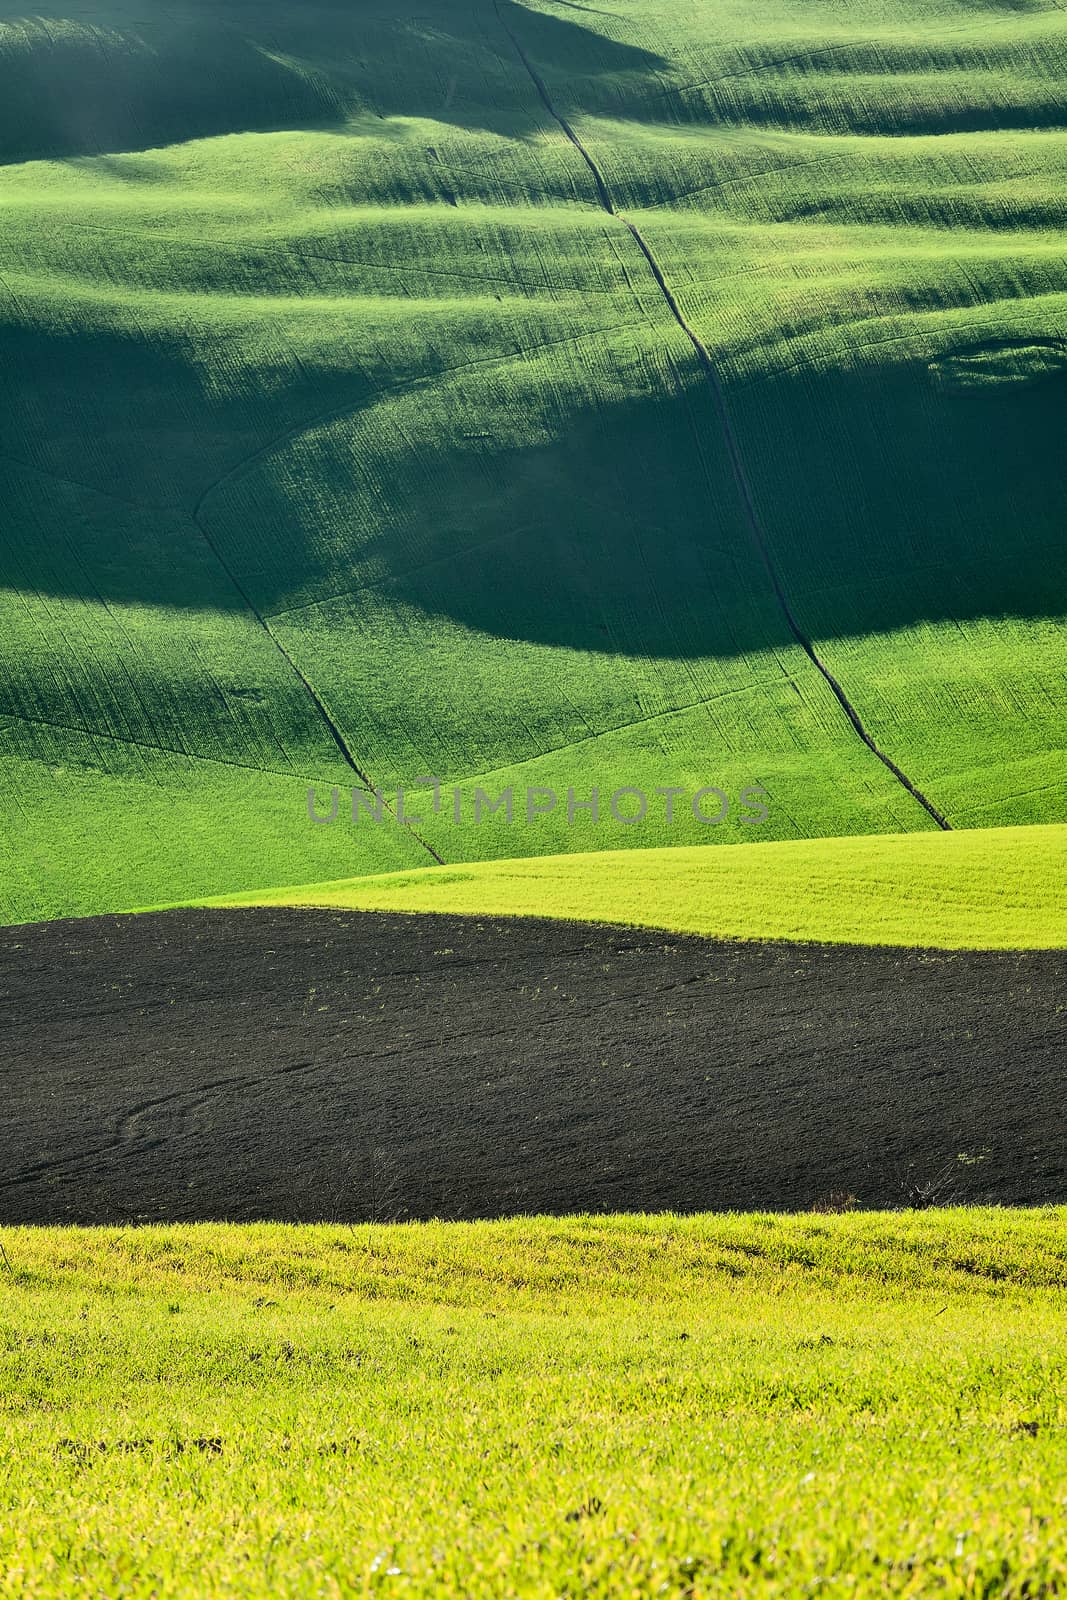 Rural grass field landscape by LuigiMorbidelli